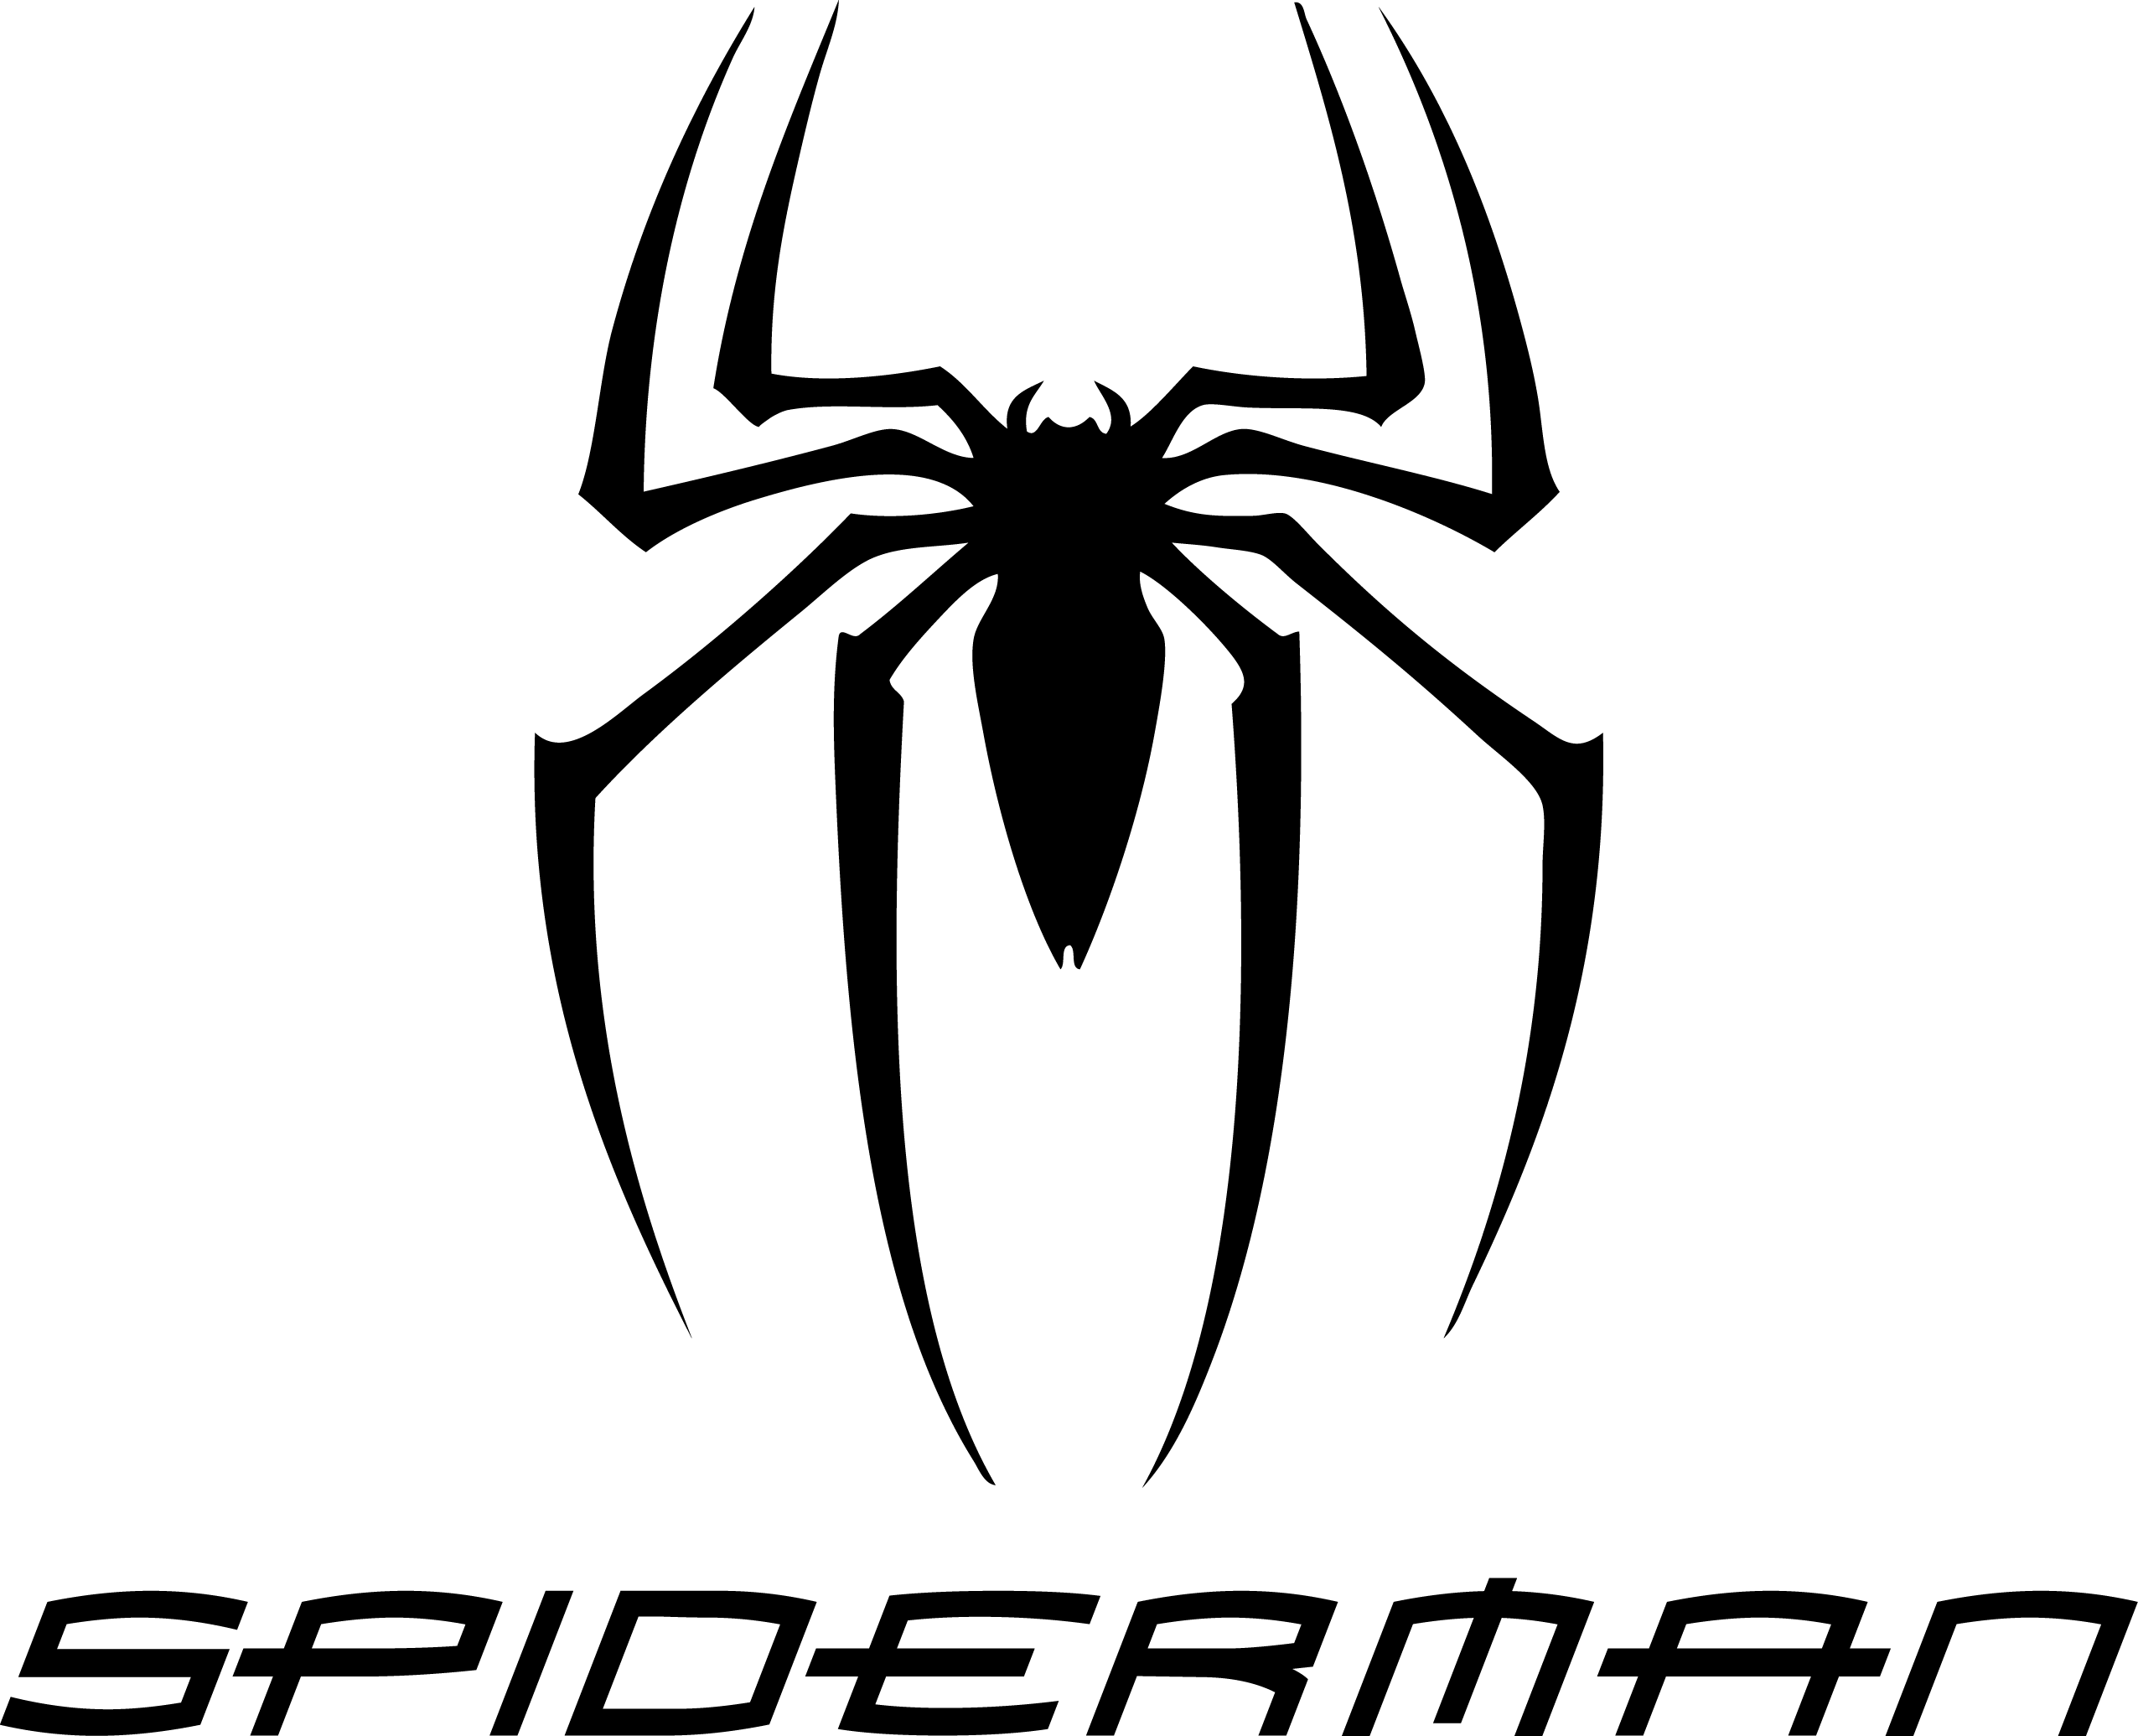 Spider-Man Spider Logo - Spiderman Logo PNG Transparent Spiderman Logo.PNG Images. | PlusPNG